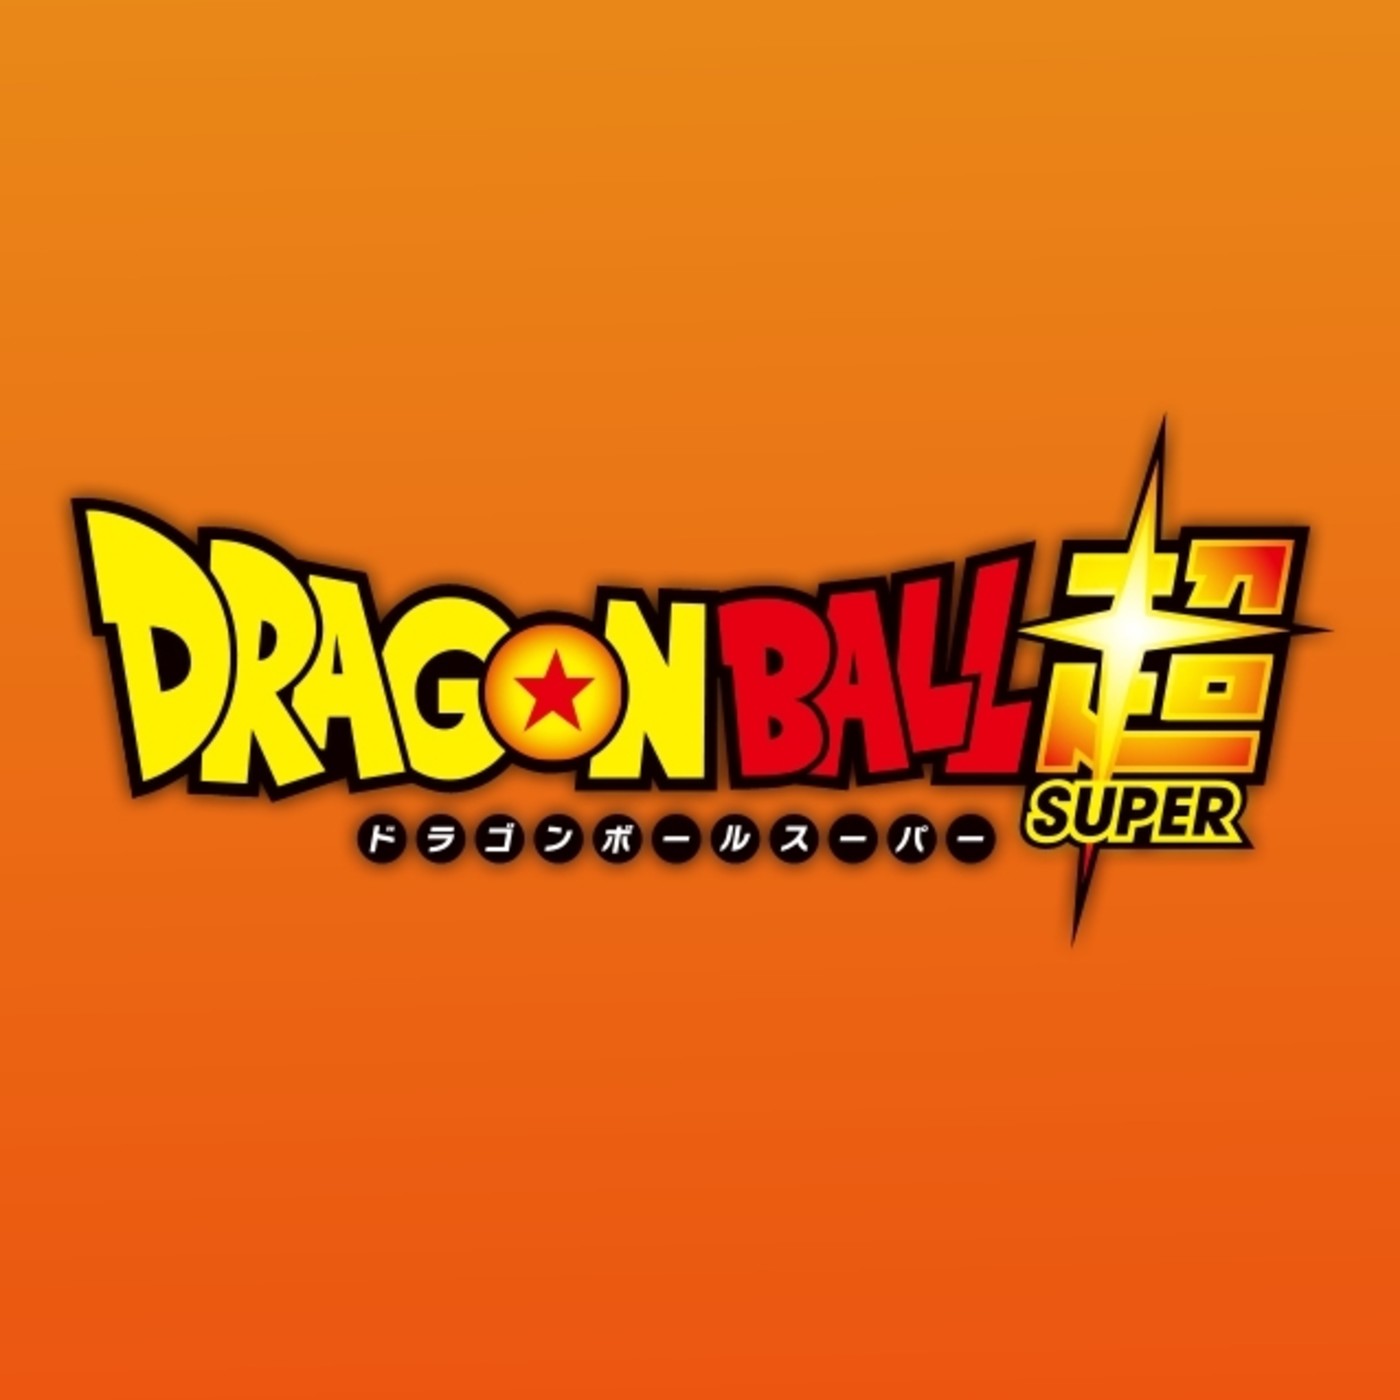 Gambatte Podcast | 'Dragon Ball Super': Resumen 1-27, Boing, la censura y nuevos capítulos